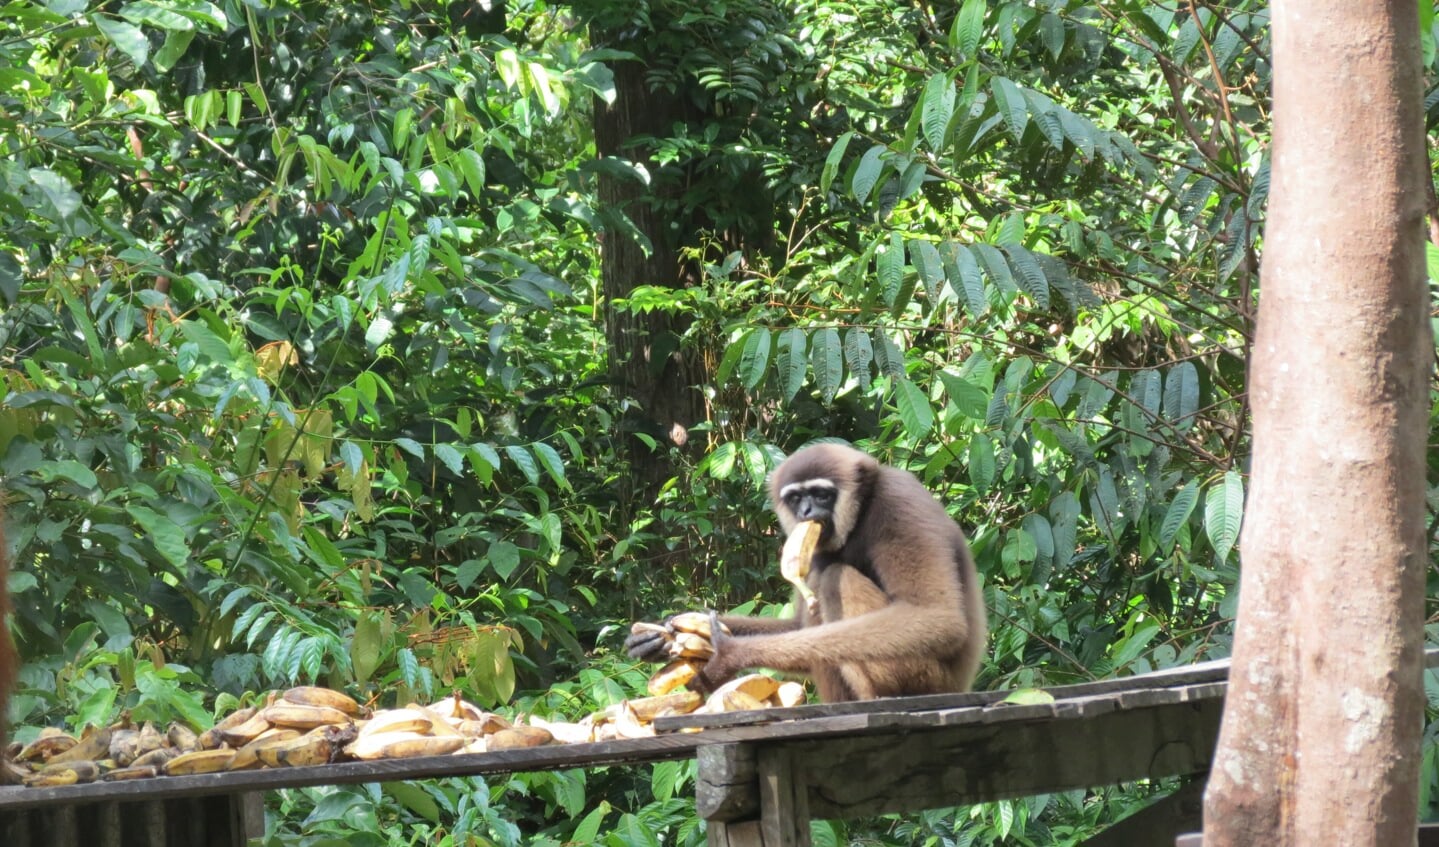 Bij de voederplaats pikt een kleine aap gauw wat bananen voordat de orang-oetans komen.